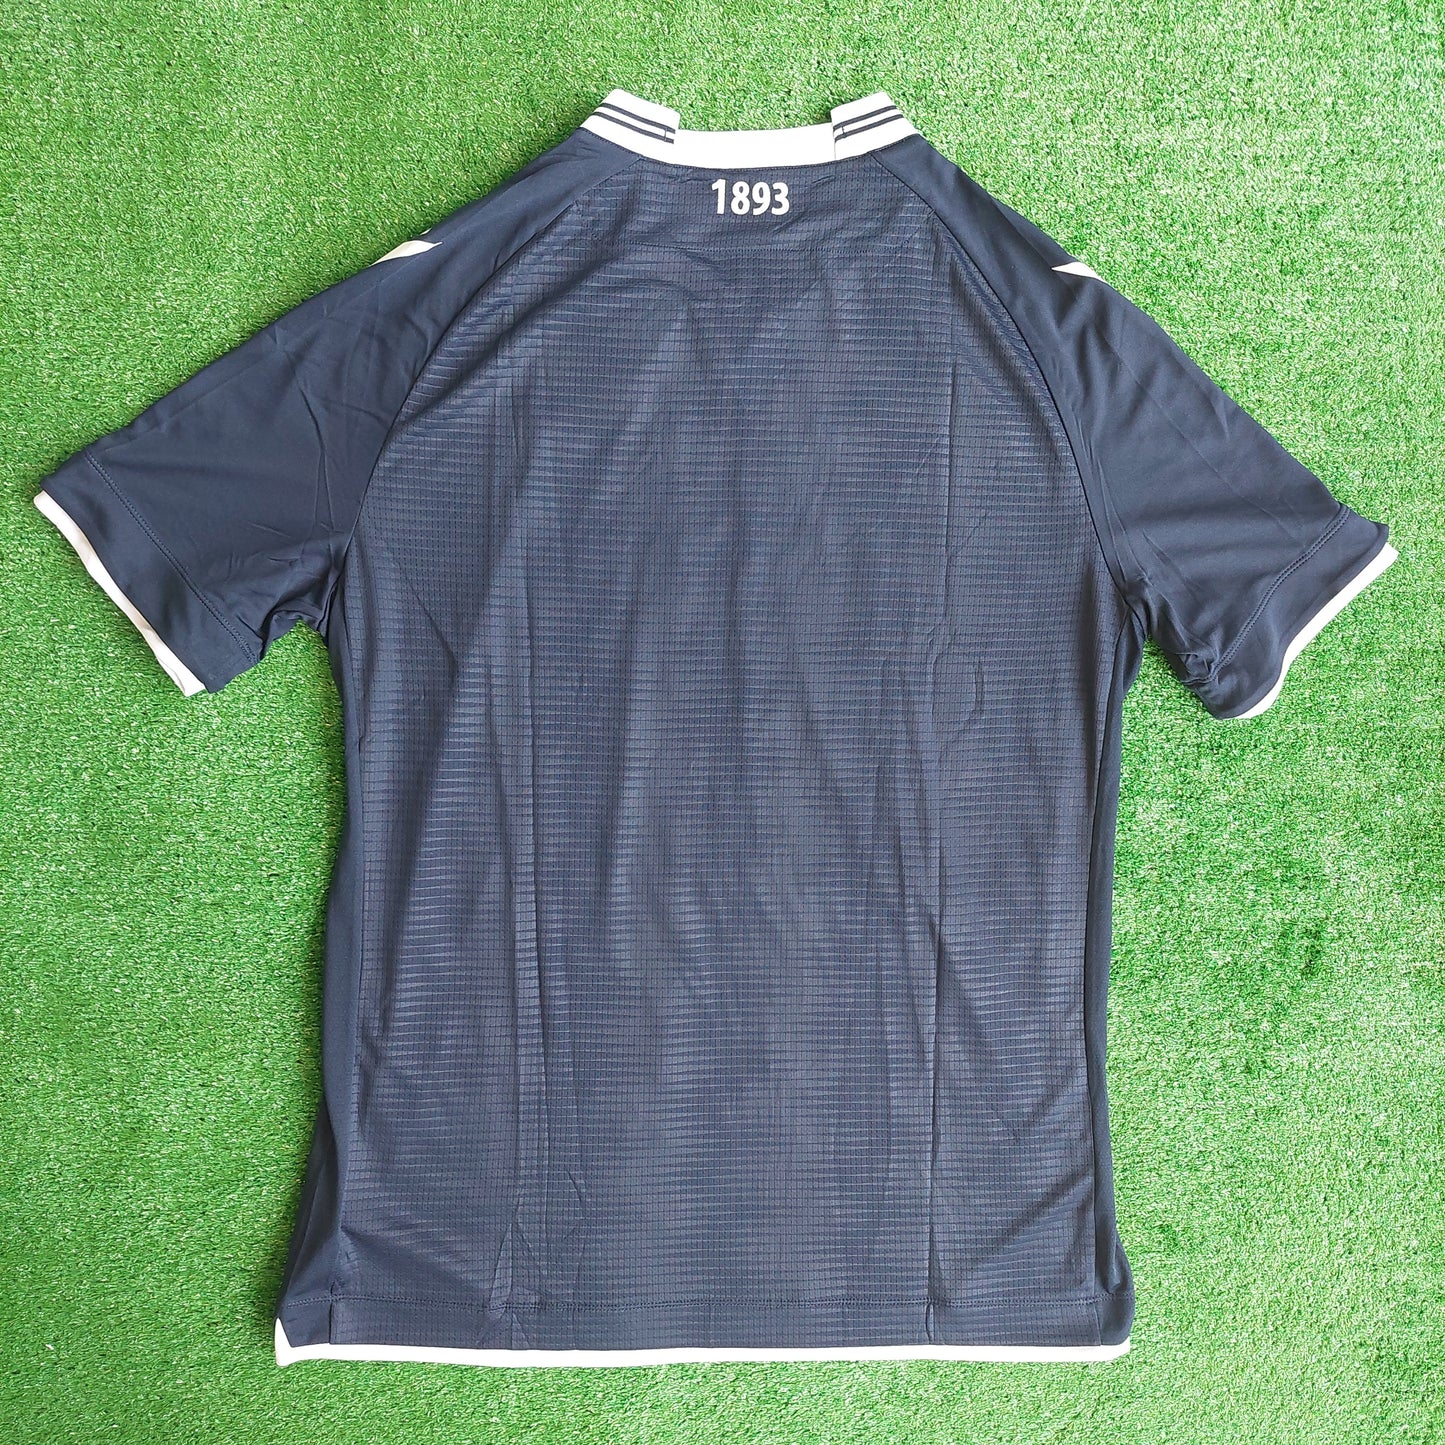 Dundee FC 2022/23 Home Shirt (BNWT) - Size XXL